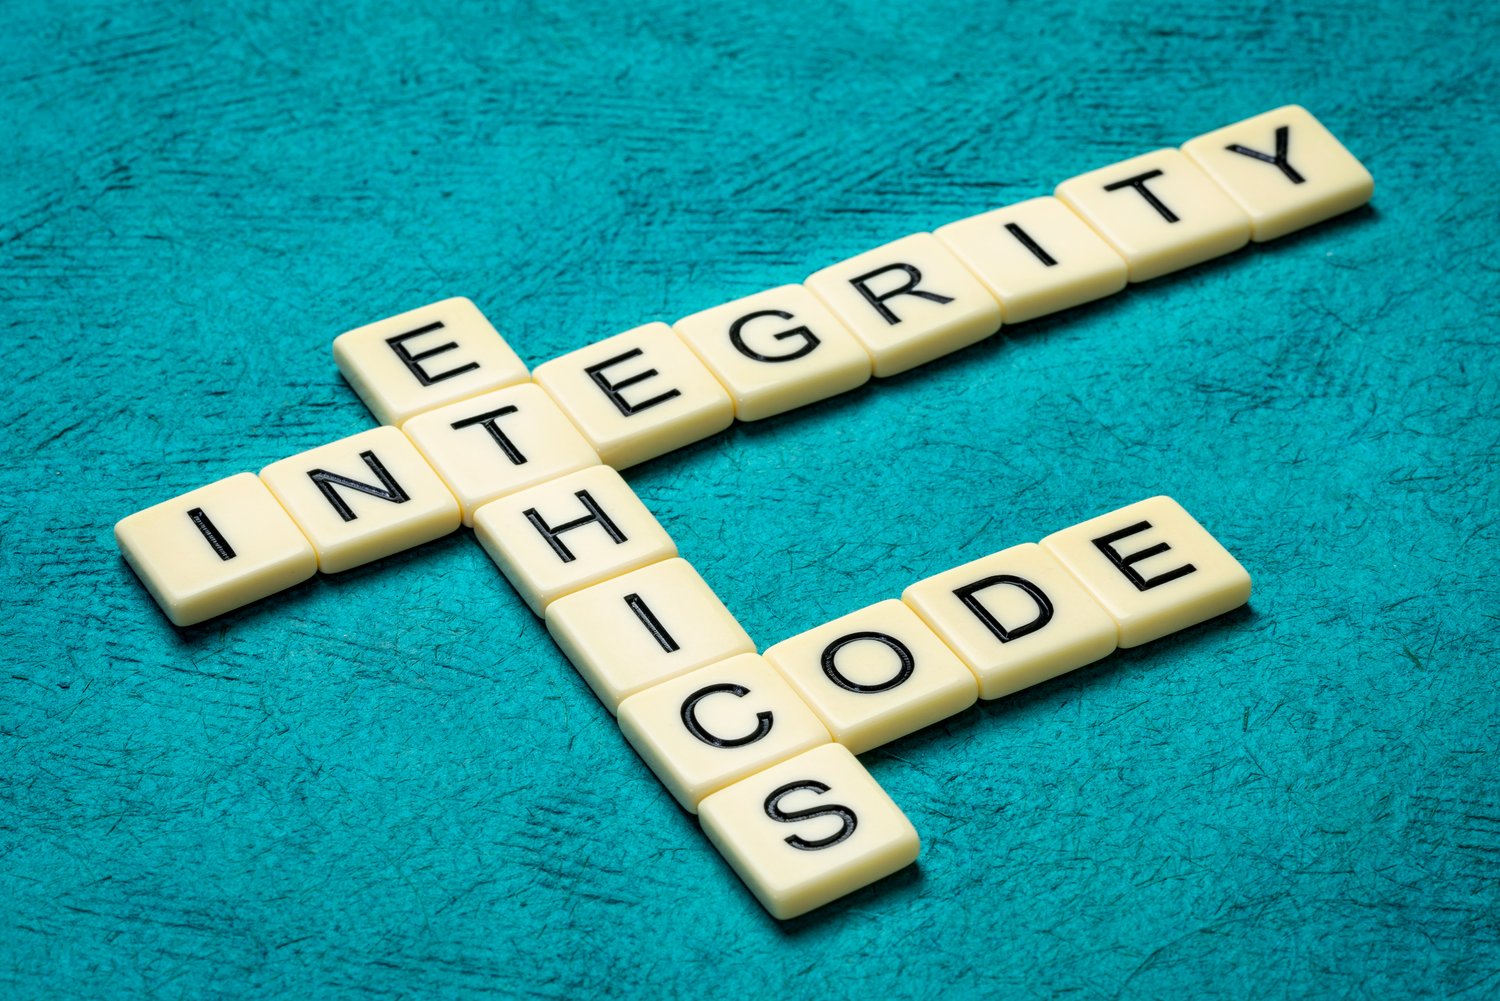 Steine aus dem Spiel Scrabble formen die Worte Integerity, Ethics und Code